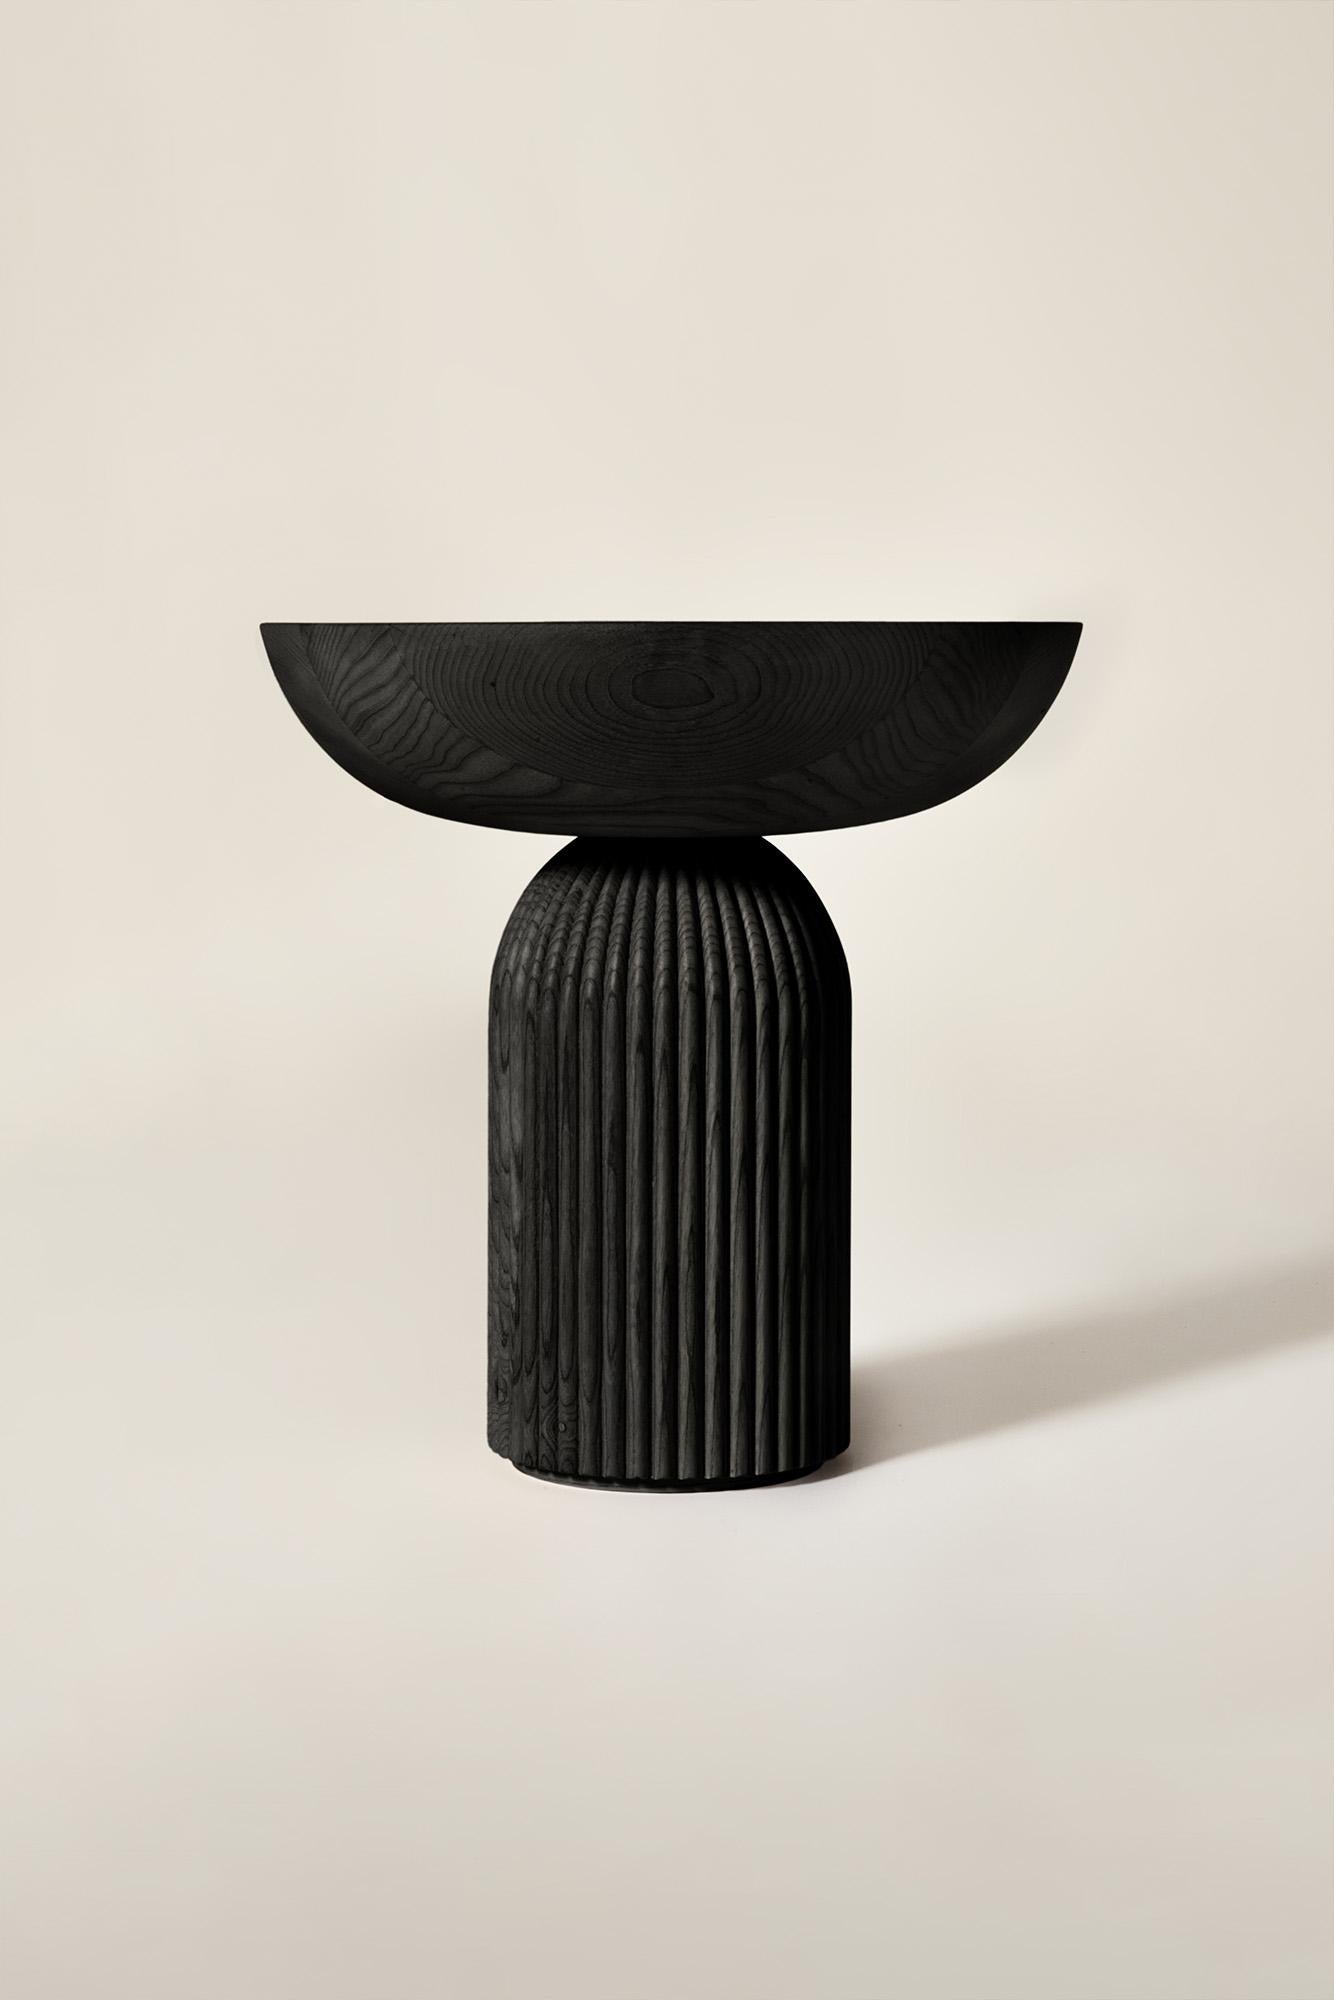 Huilé Table basse Convesso en bois massif, finition en frêne noir, contemporaine en vente